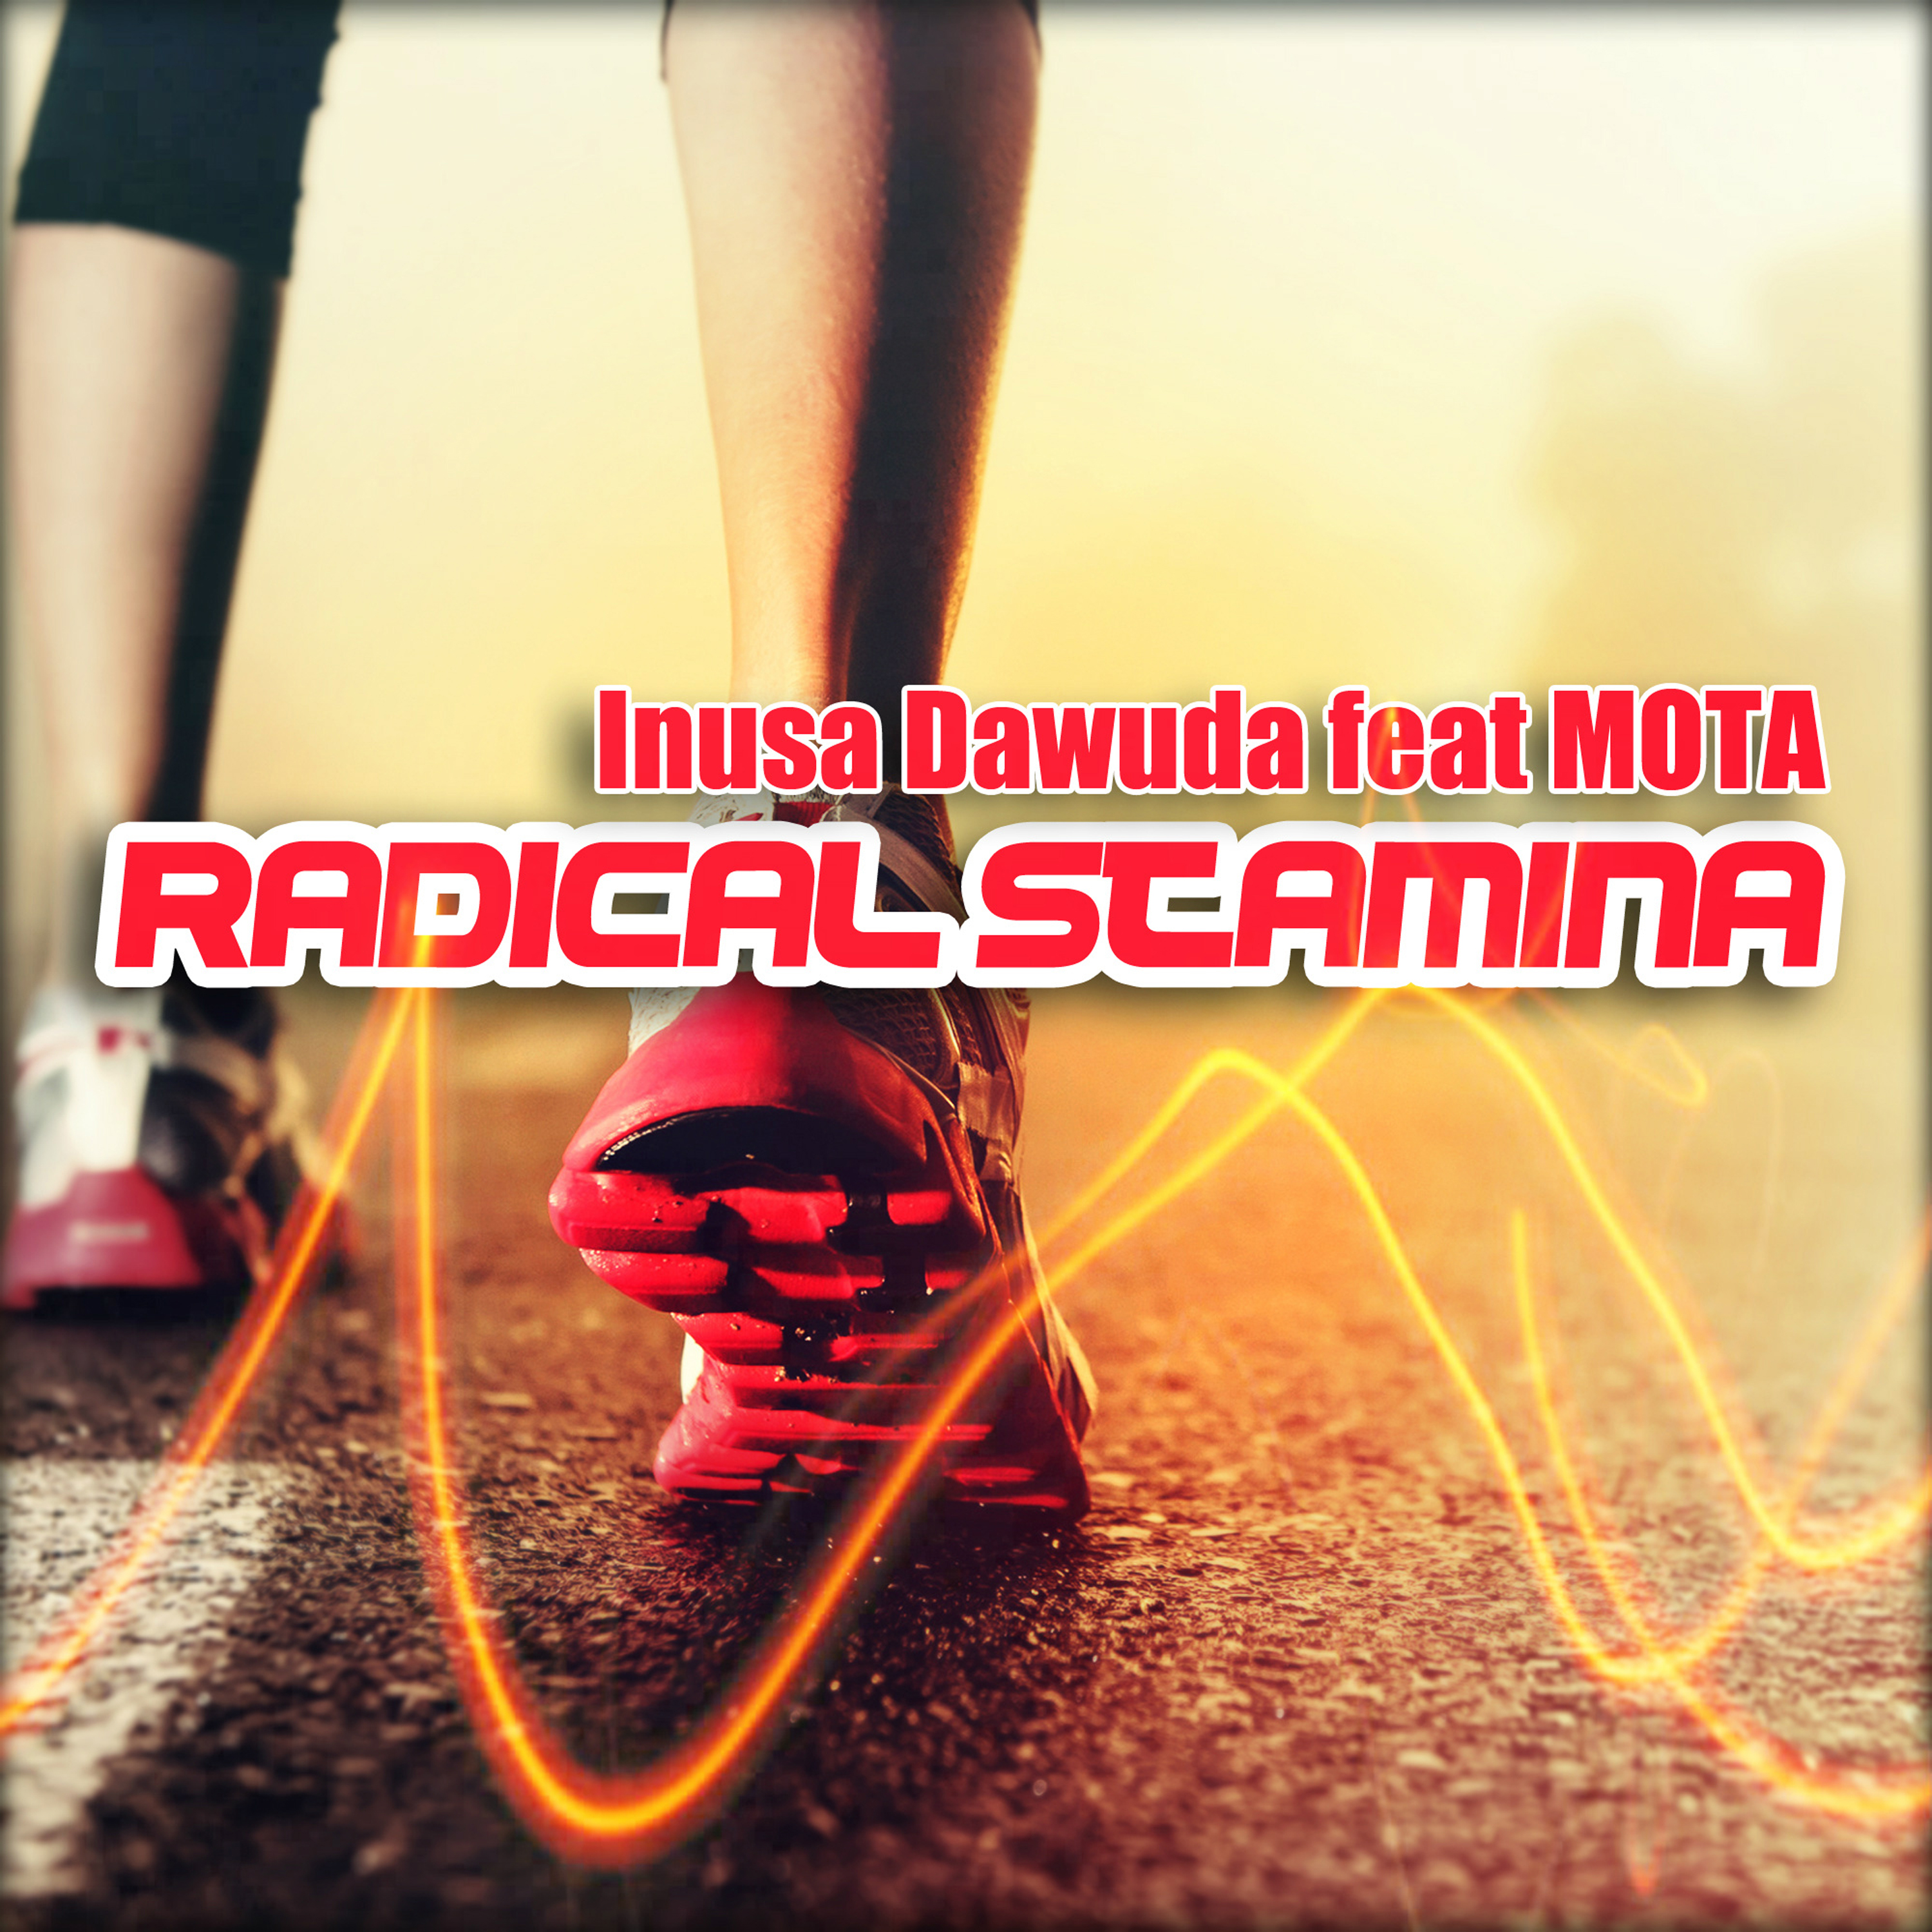 Radical Stamina (Edvard Hunger Radio Remix) [Feat. Mota]